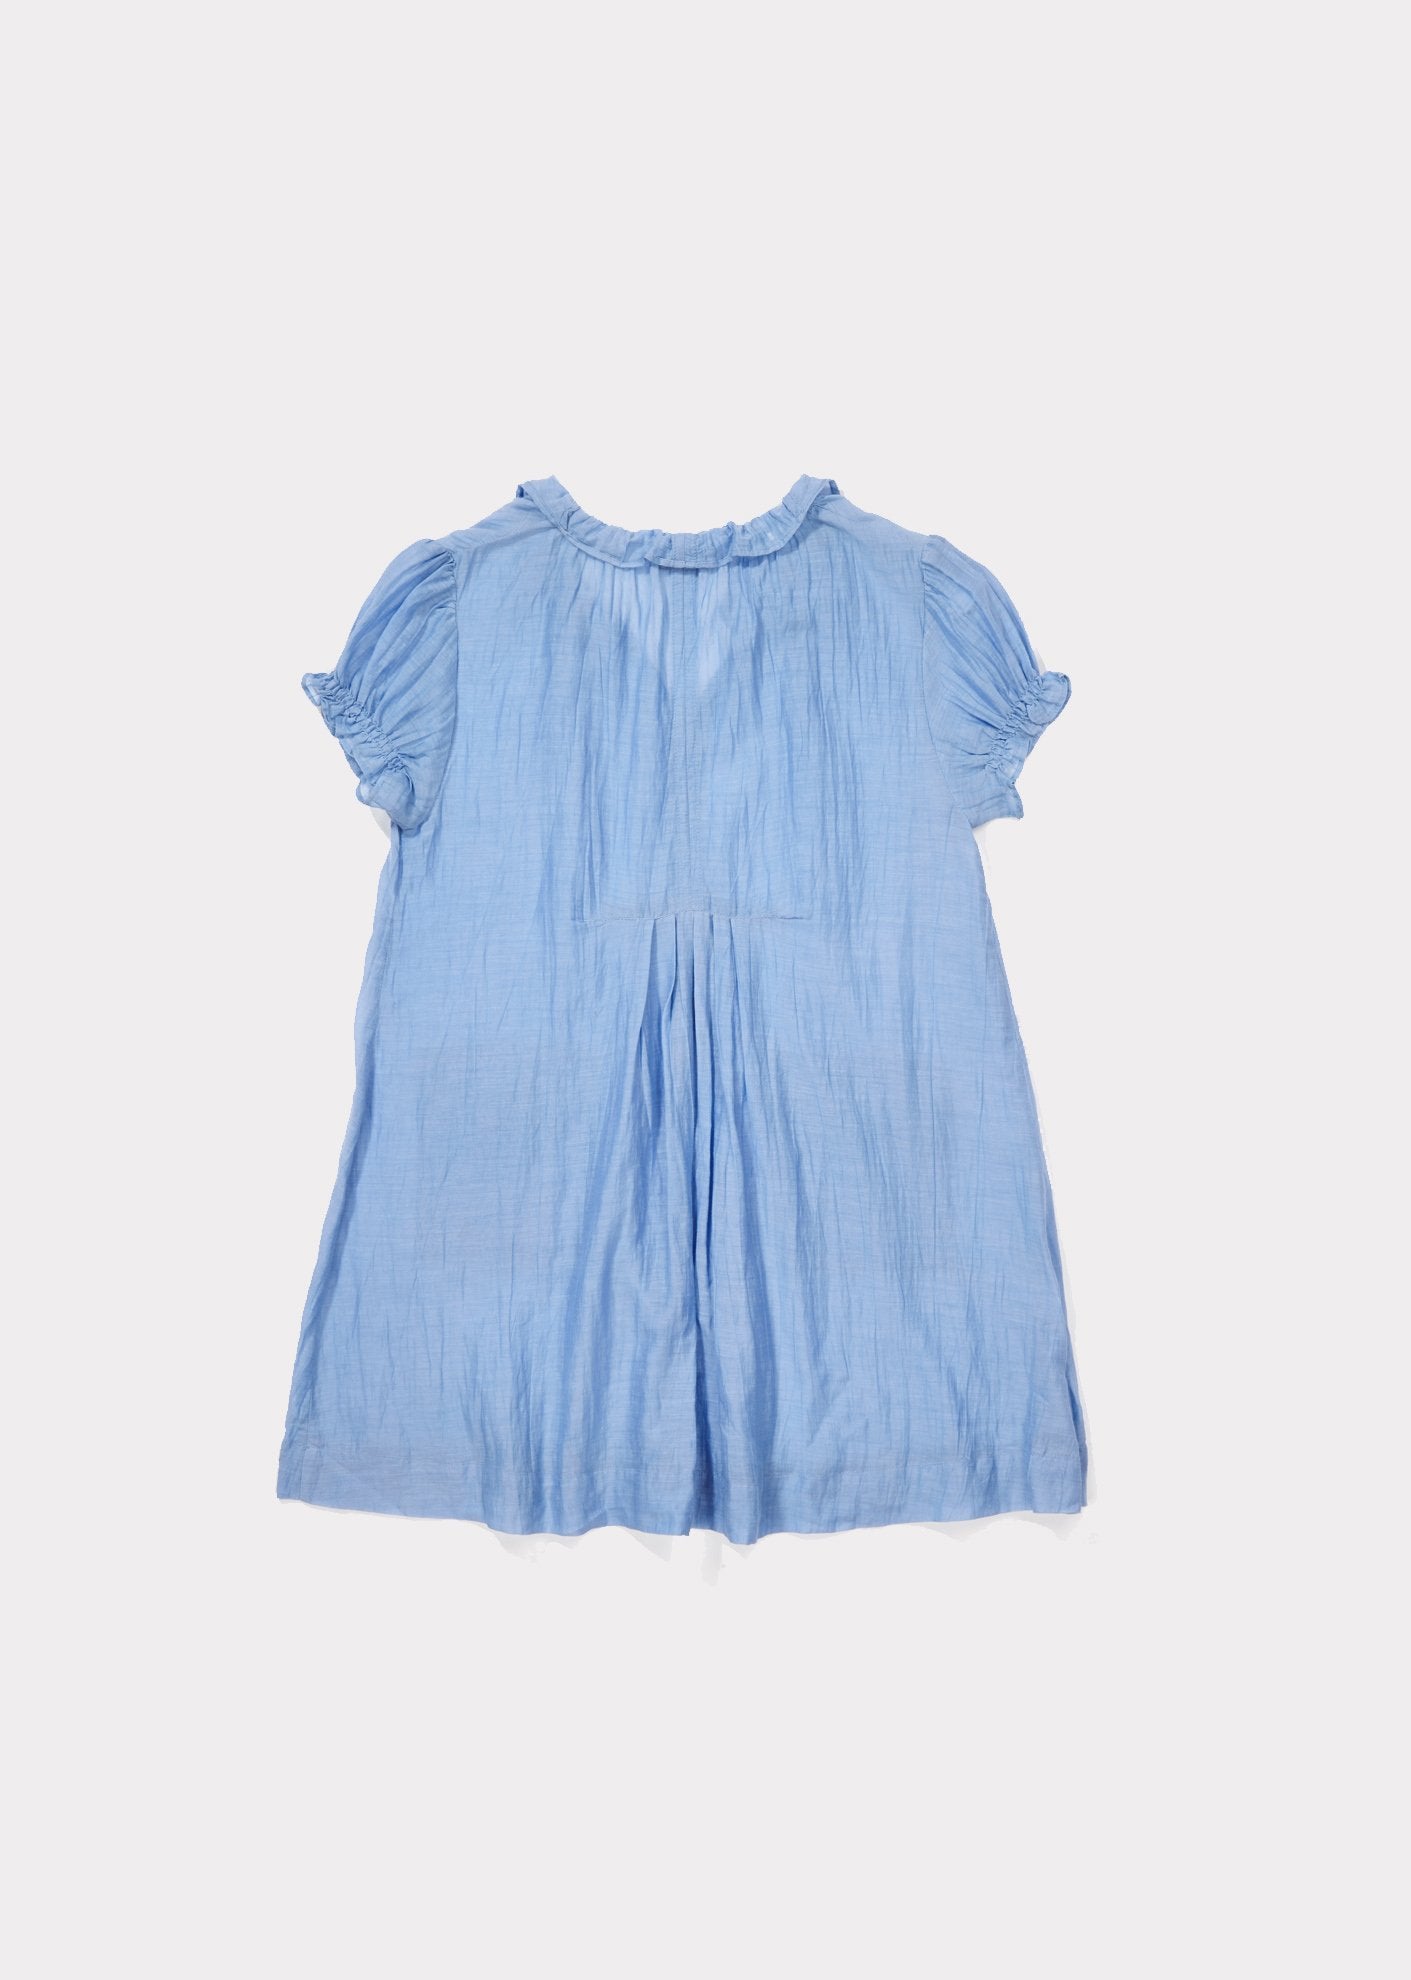 Girls Azure Blue Cotton Woven Dress